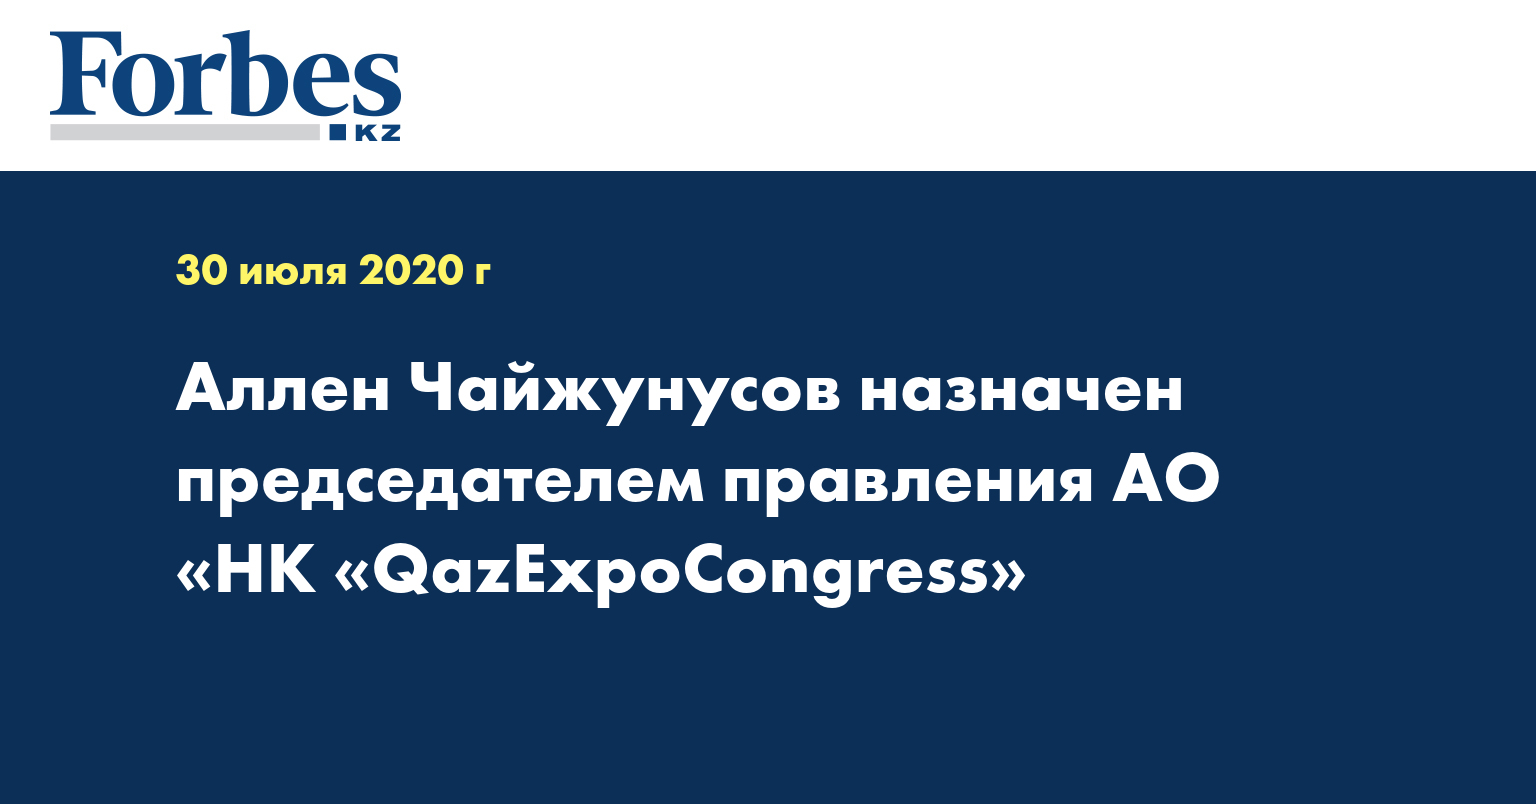 Аллен Чайжунусов назначен председателем правления АО «НК «QazExpoCongress»